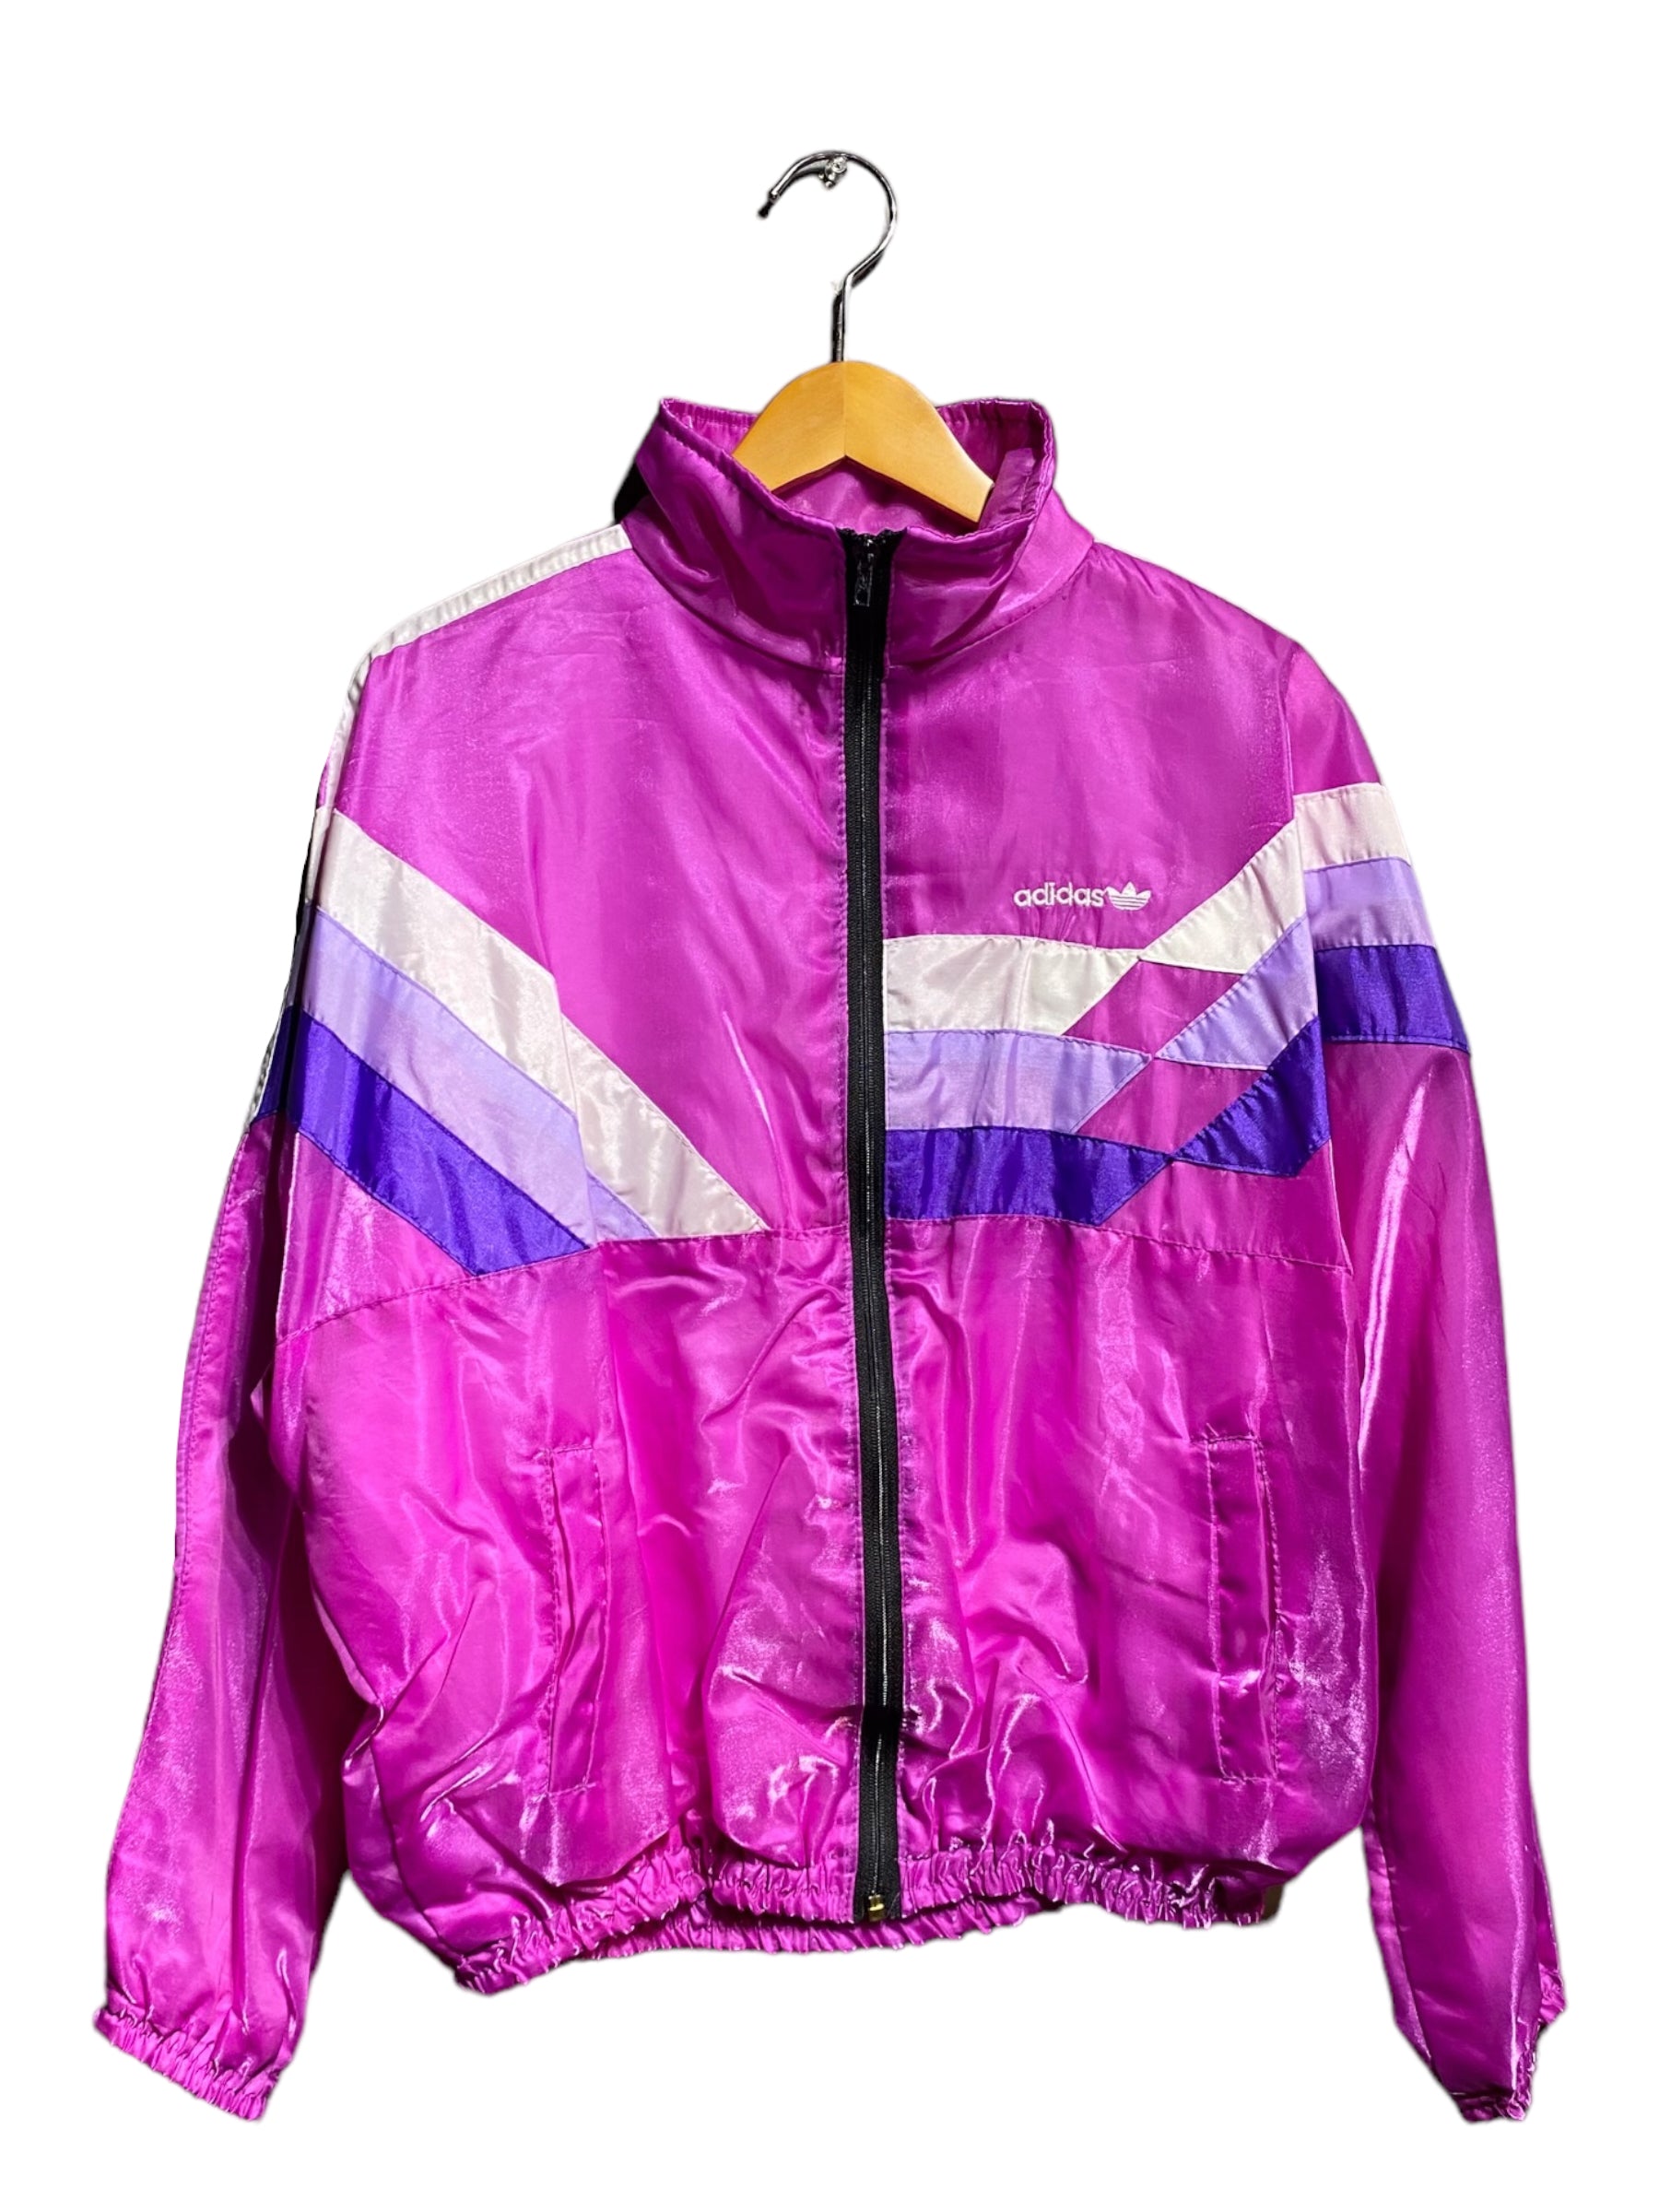 70年代 80年代 adidas アディダス セットアップ Nylon track jacket